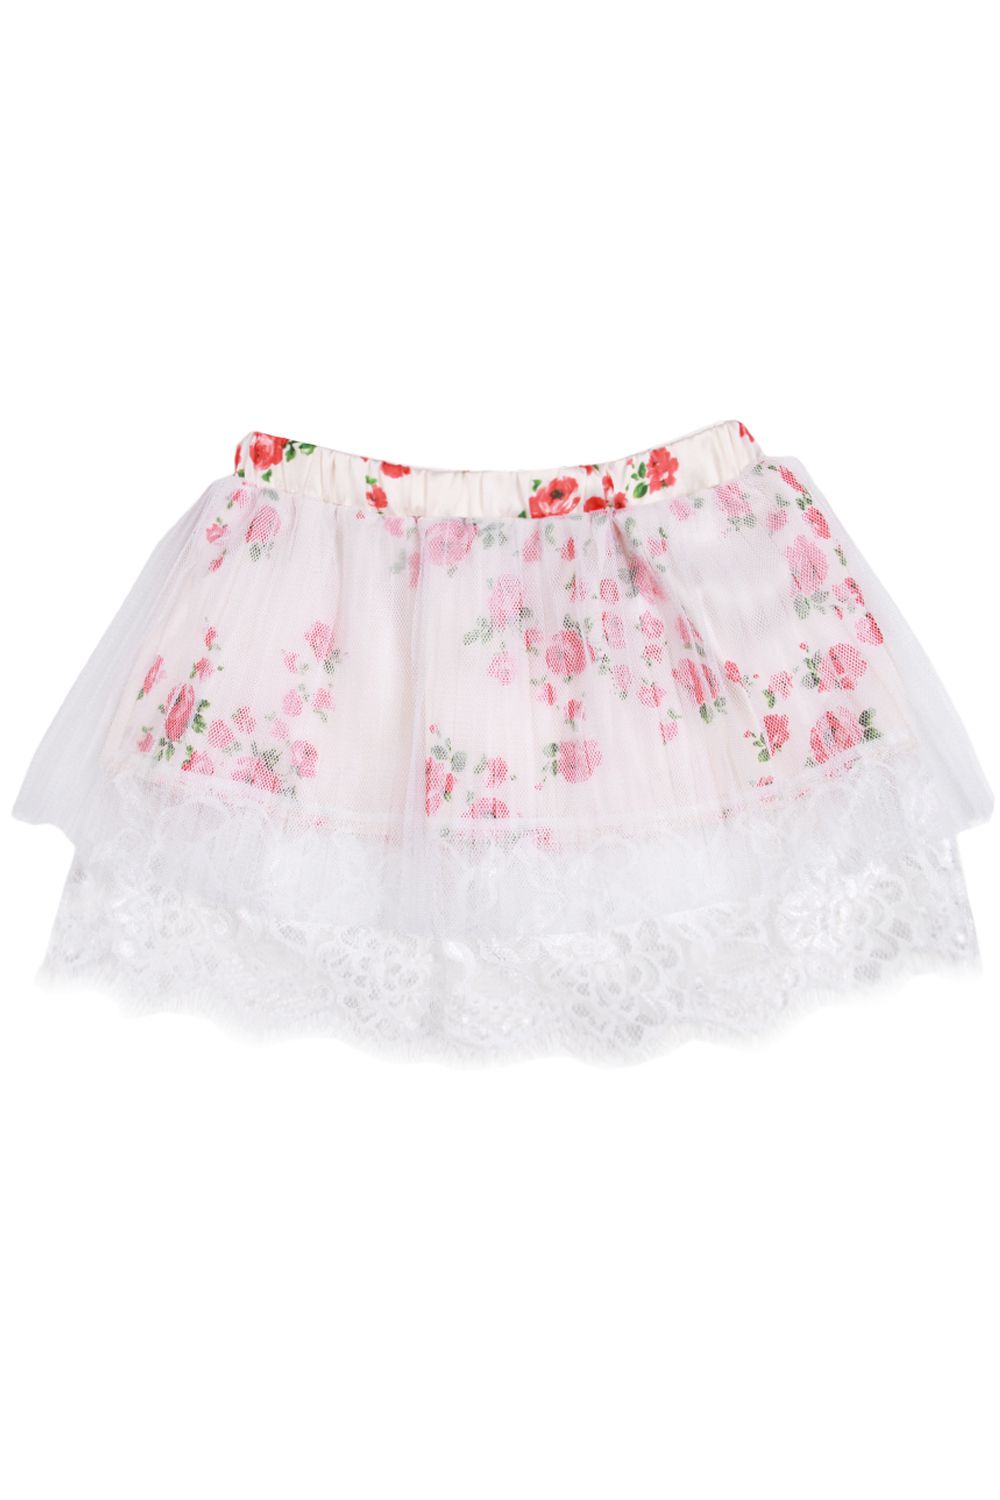 ⭐ Купить юбка для девочки «Gaialuna», белый, артикул GE520255 в ...